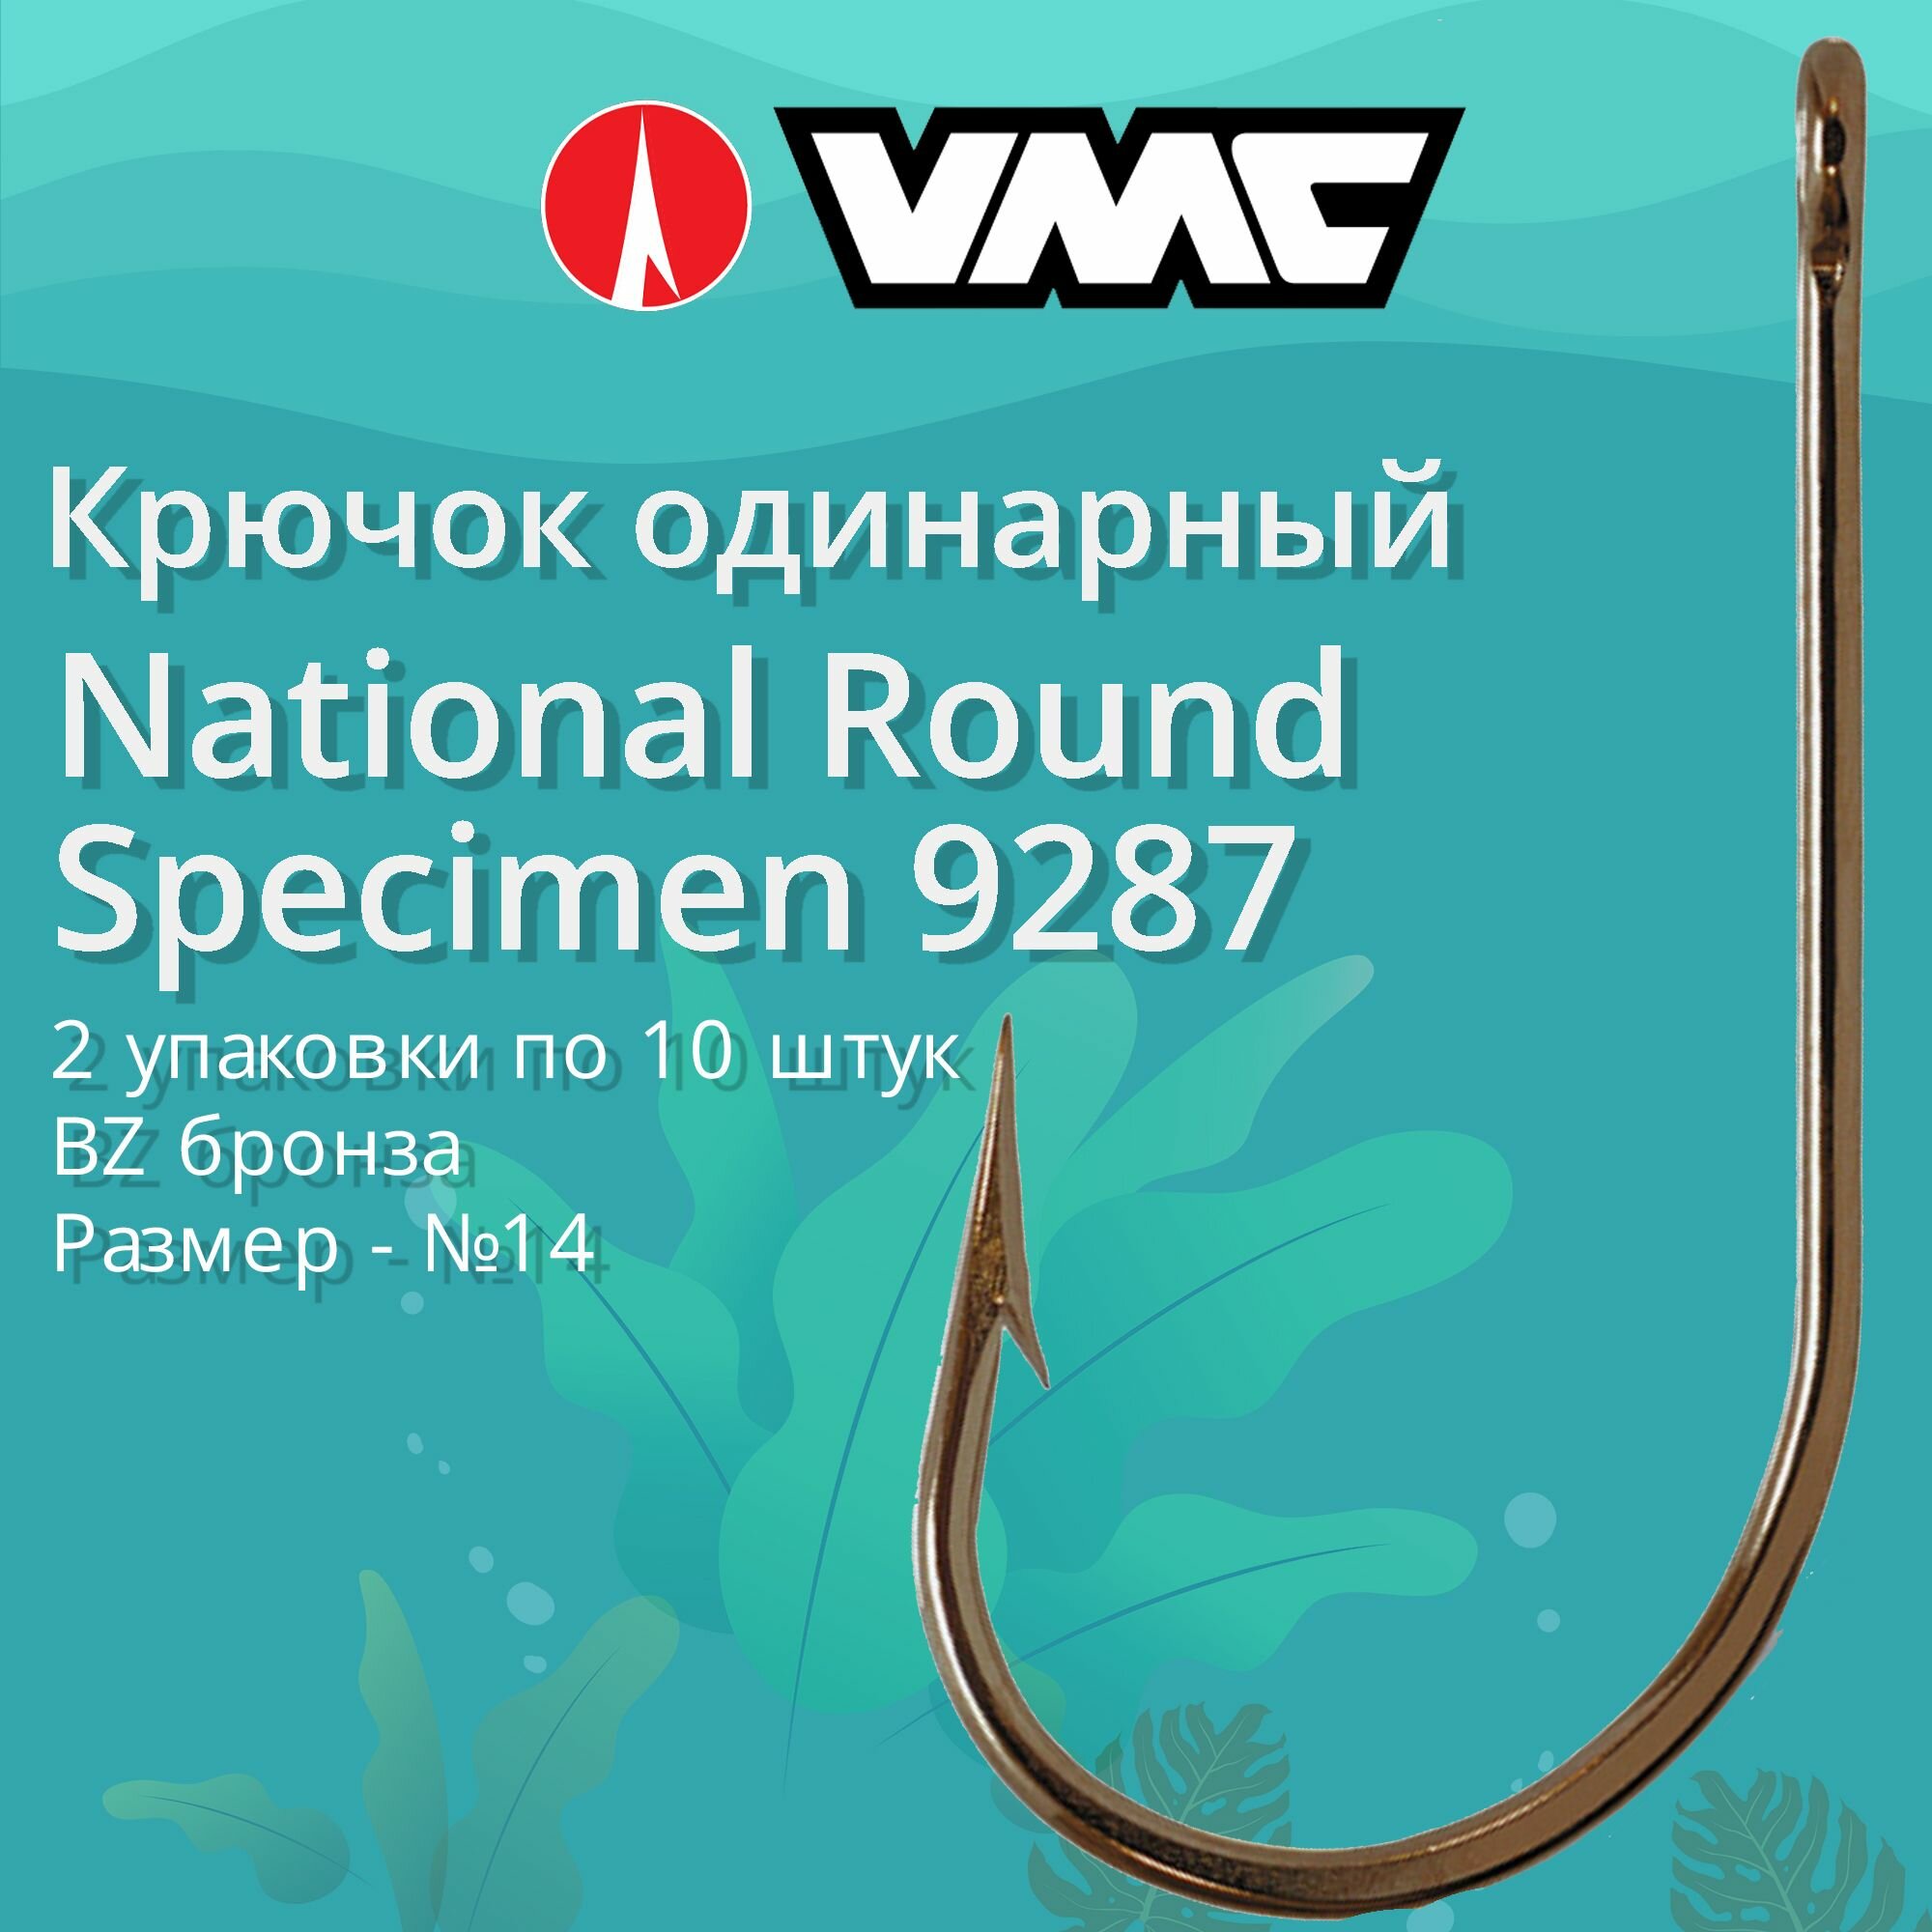 Крючки для рыбалки (одинарный) VMC National Round Specimen 9287 BZ (бронза) №14 2 упаковки по 10 штук